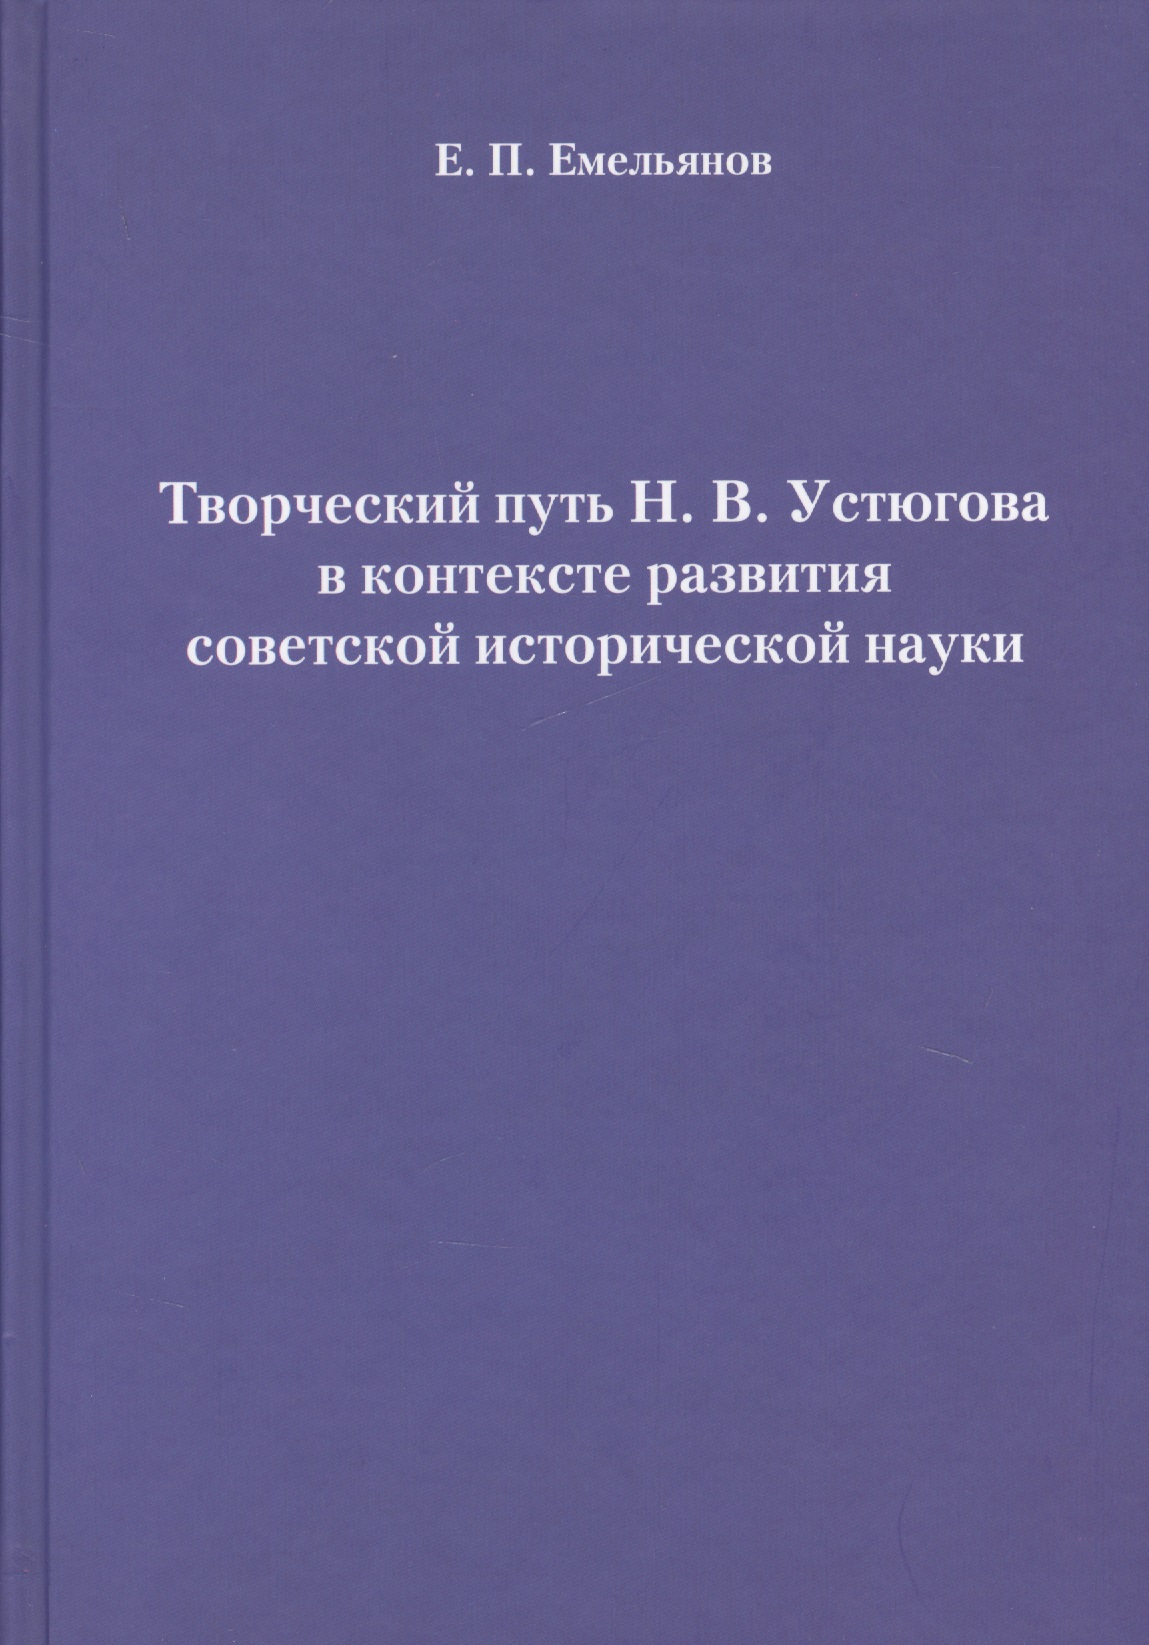 Емельянов Е. П. Творческий путь Н. В. Устюгова в контексте развития советской исторической науки